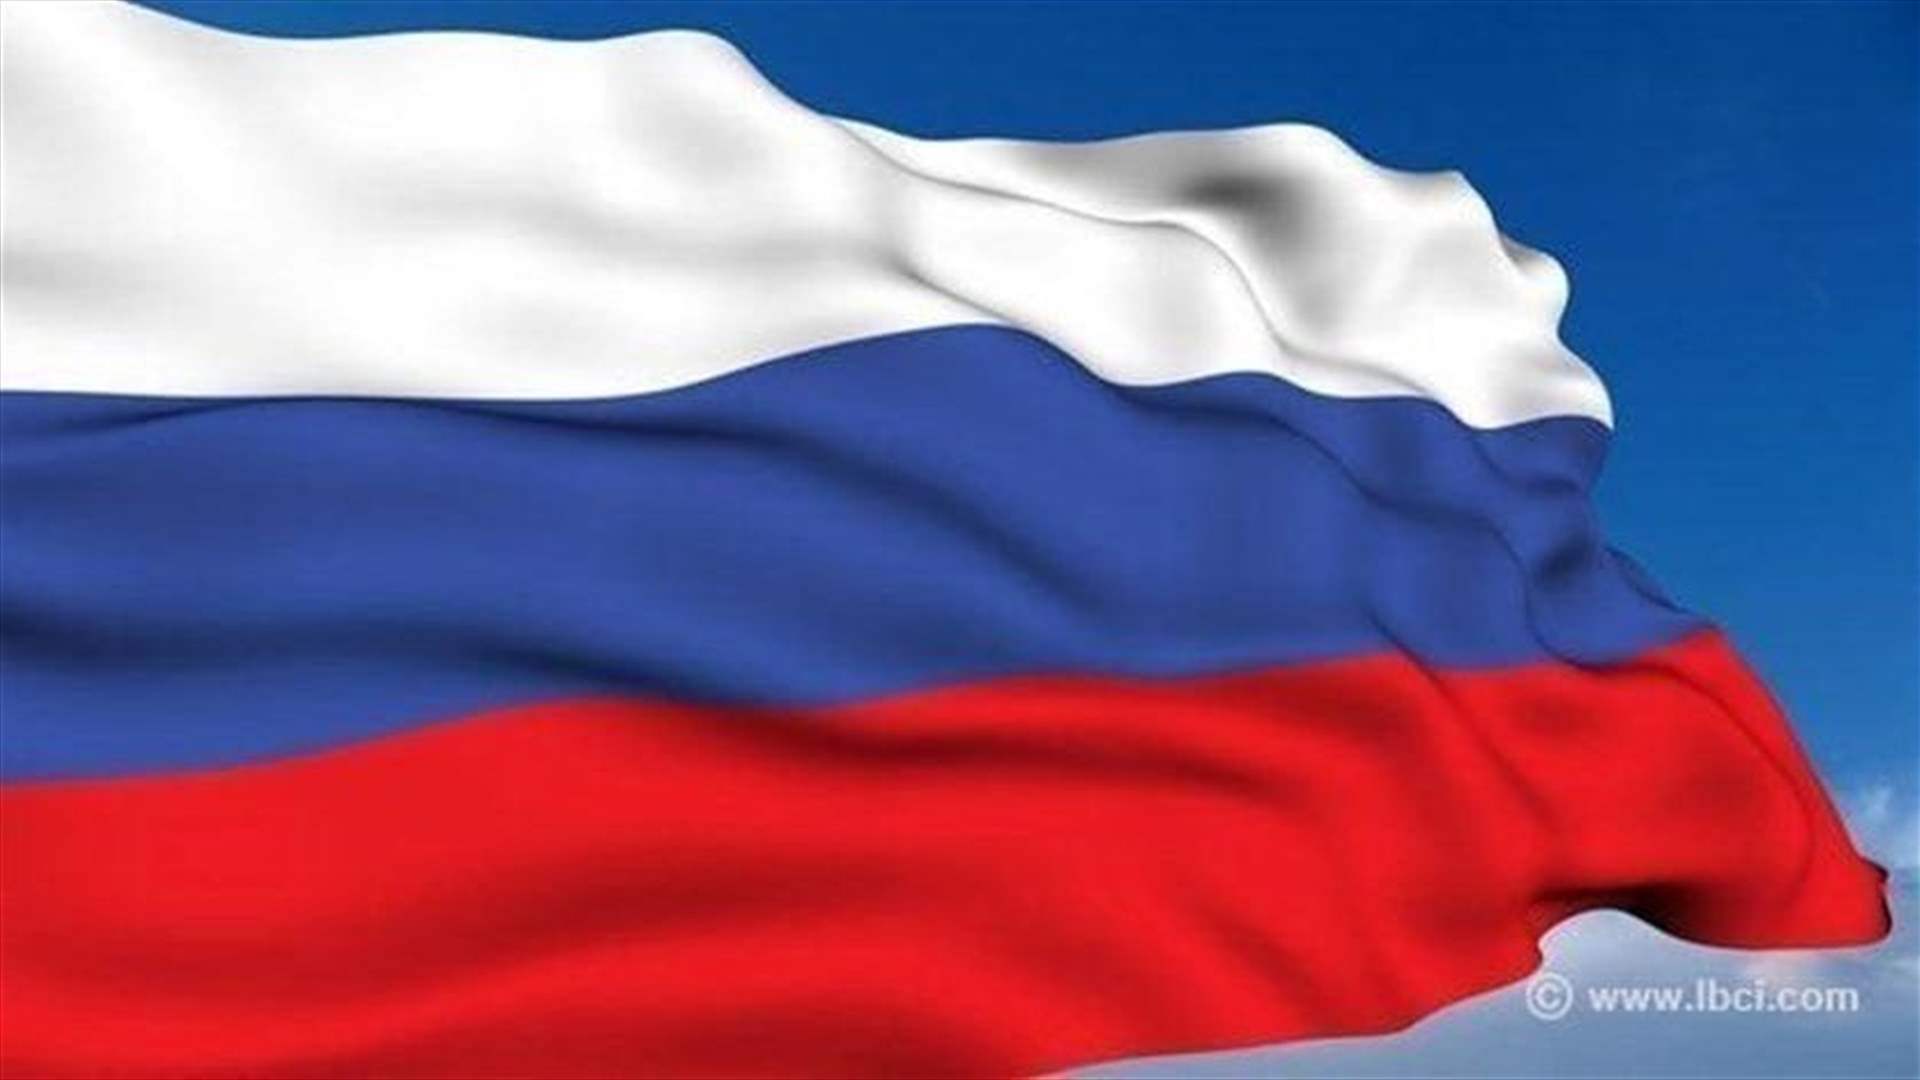 اللجنة الانتخابية الروسية تلقت 16 طلب ترشح للاستحقاق الرئاسي